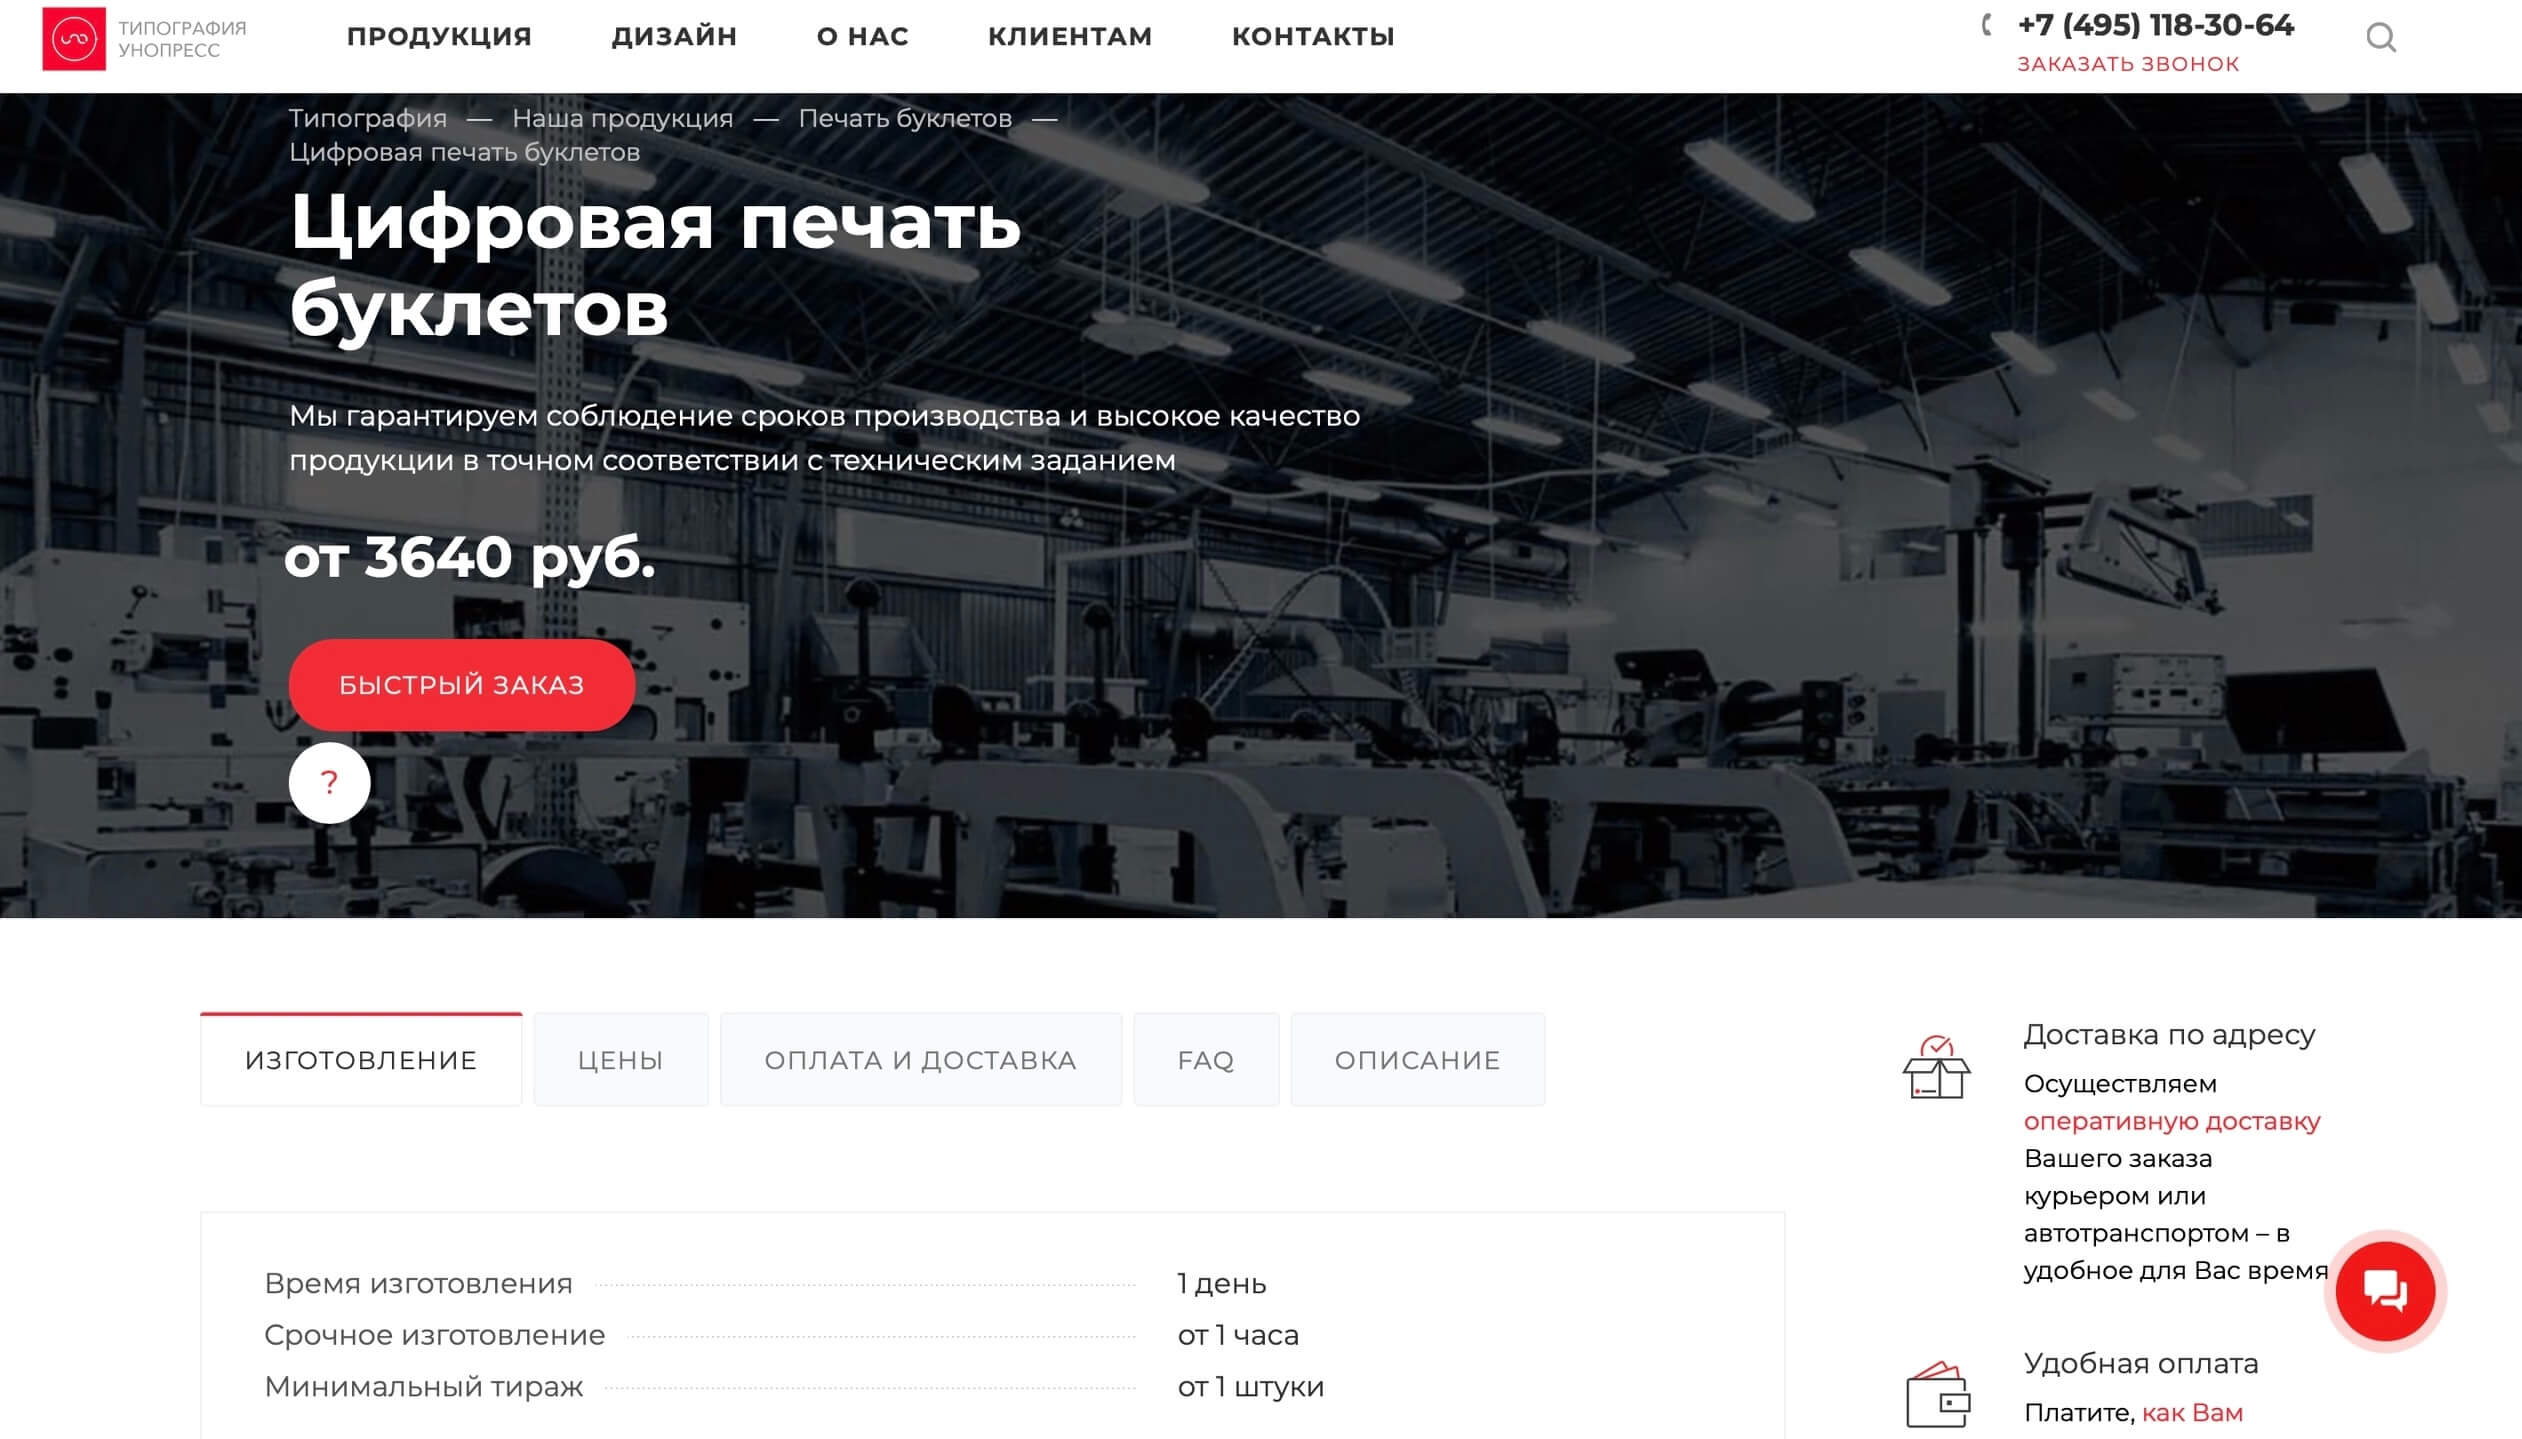 сайт типографии «Унопресс»